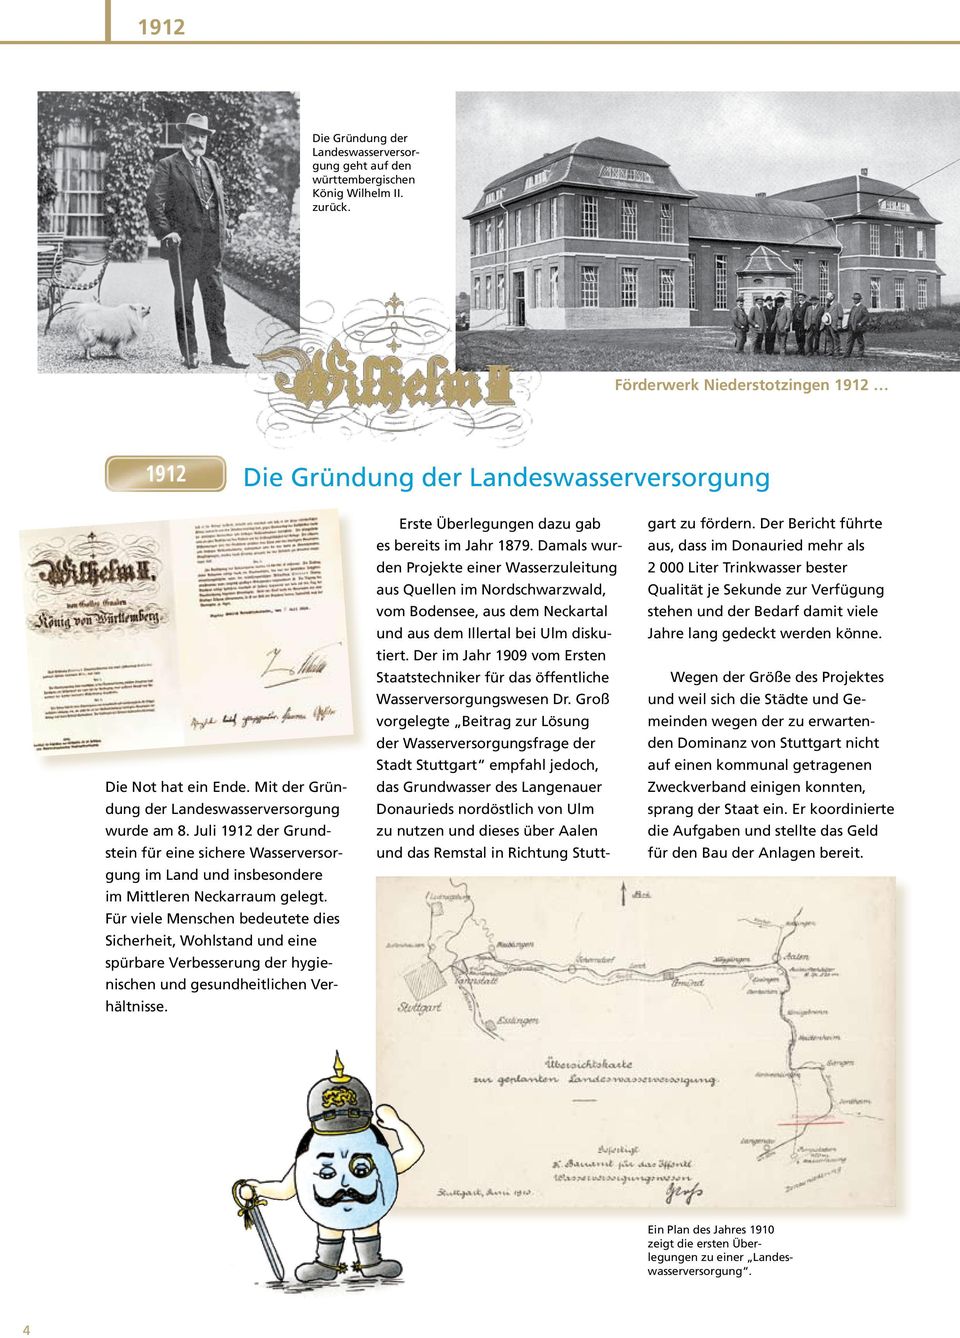 Juli 1912 der Grundstein für eine sichere Wasserversorgung im Land und insbesondere im Mittleren Neckarraum gelegt.